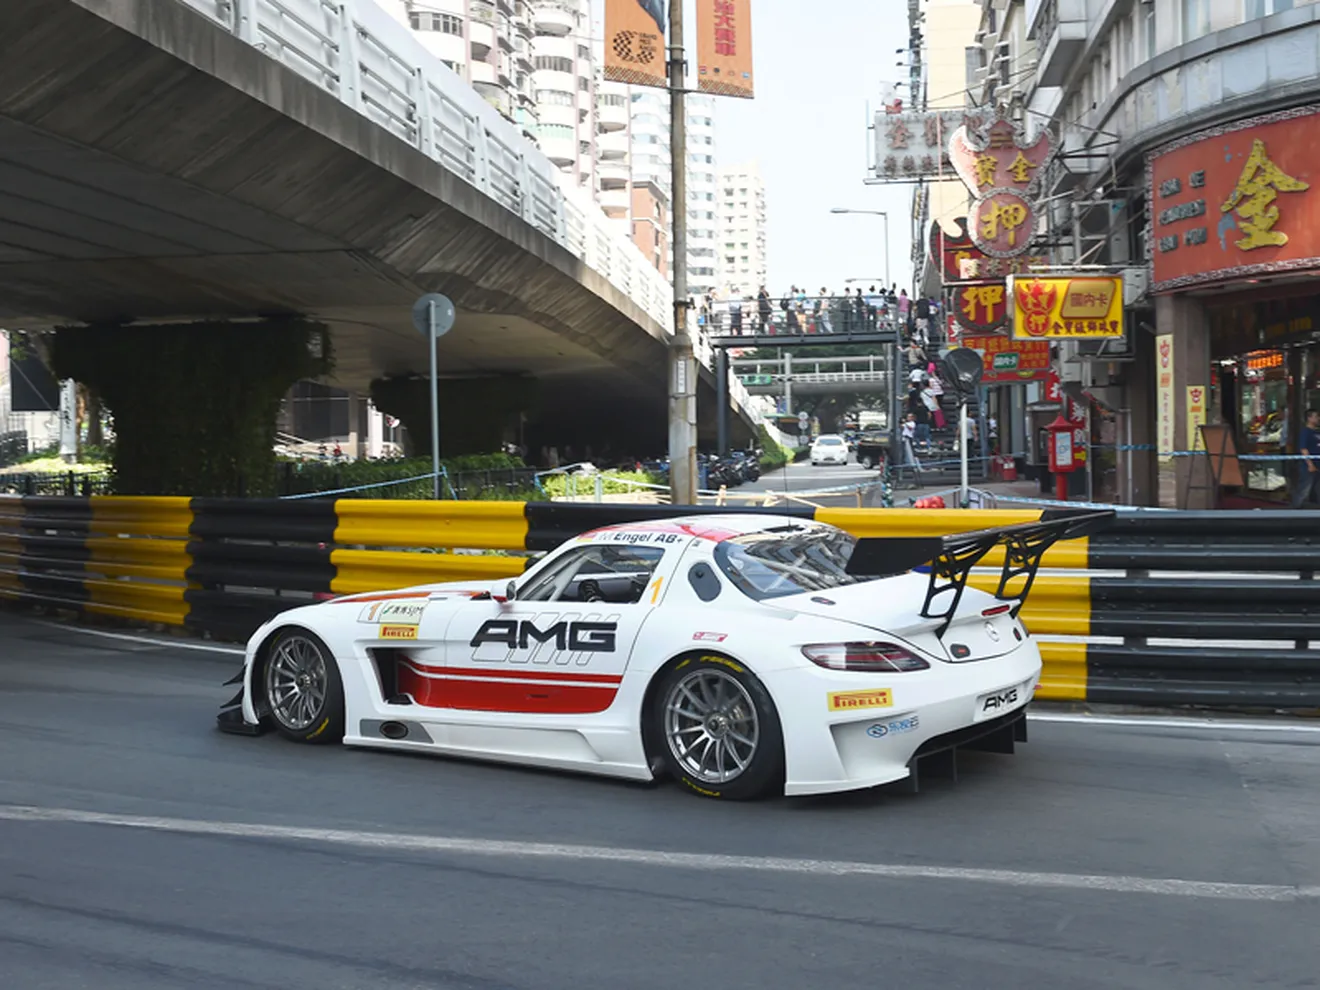 Sólo ocho GT3 oficiales en la FIA GT World Cup de Macao